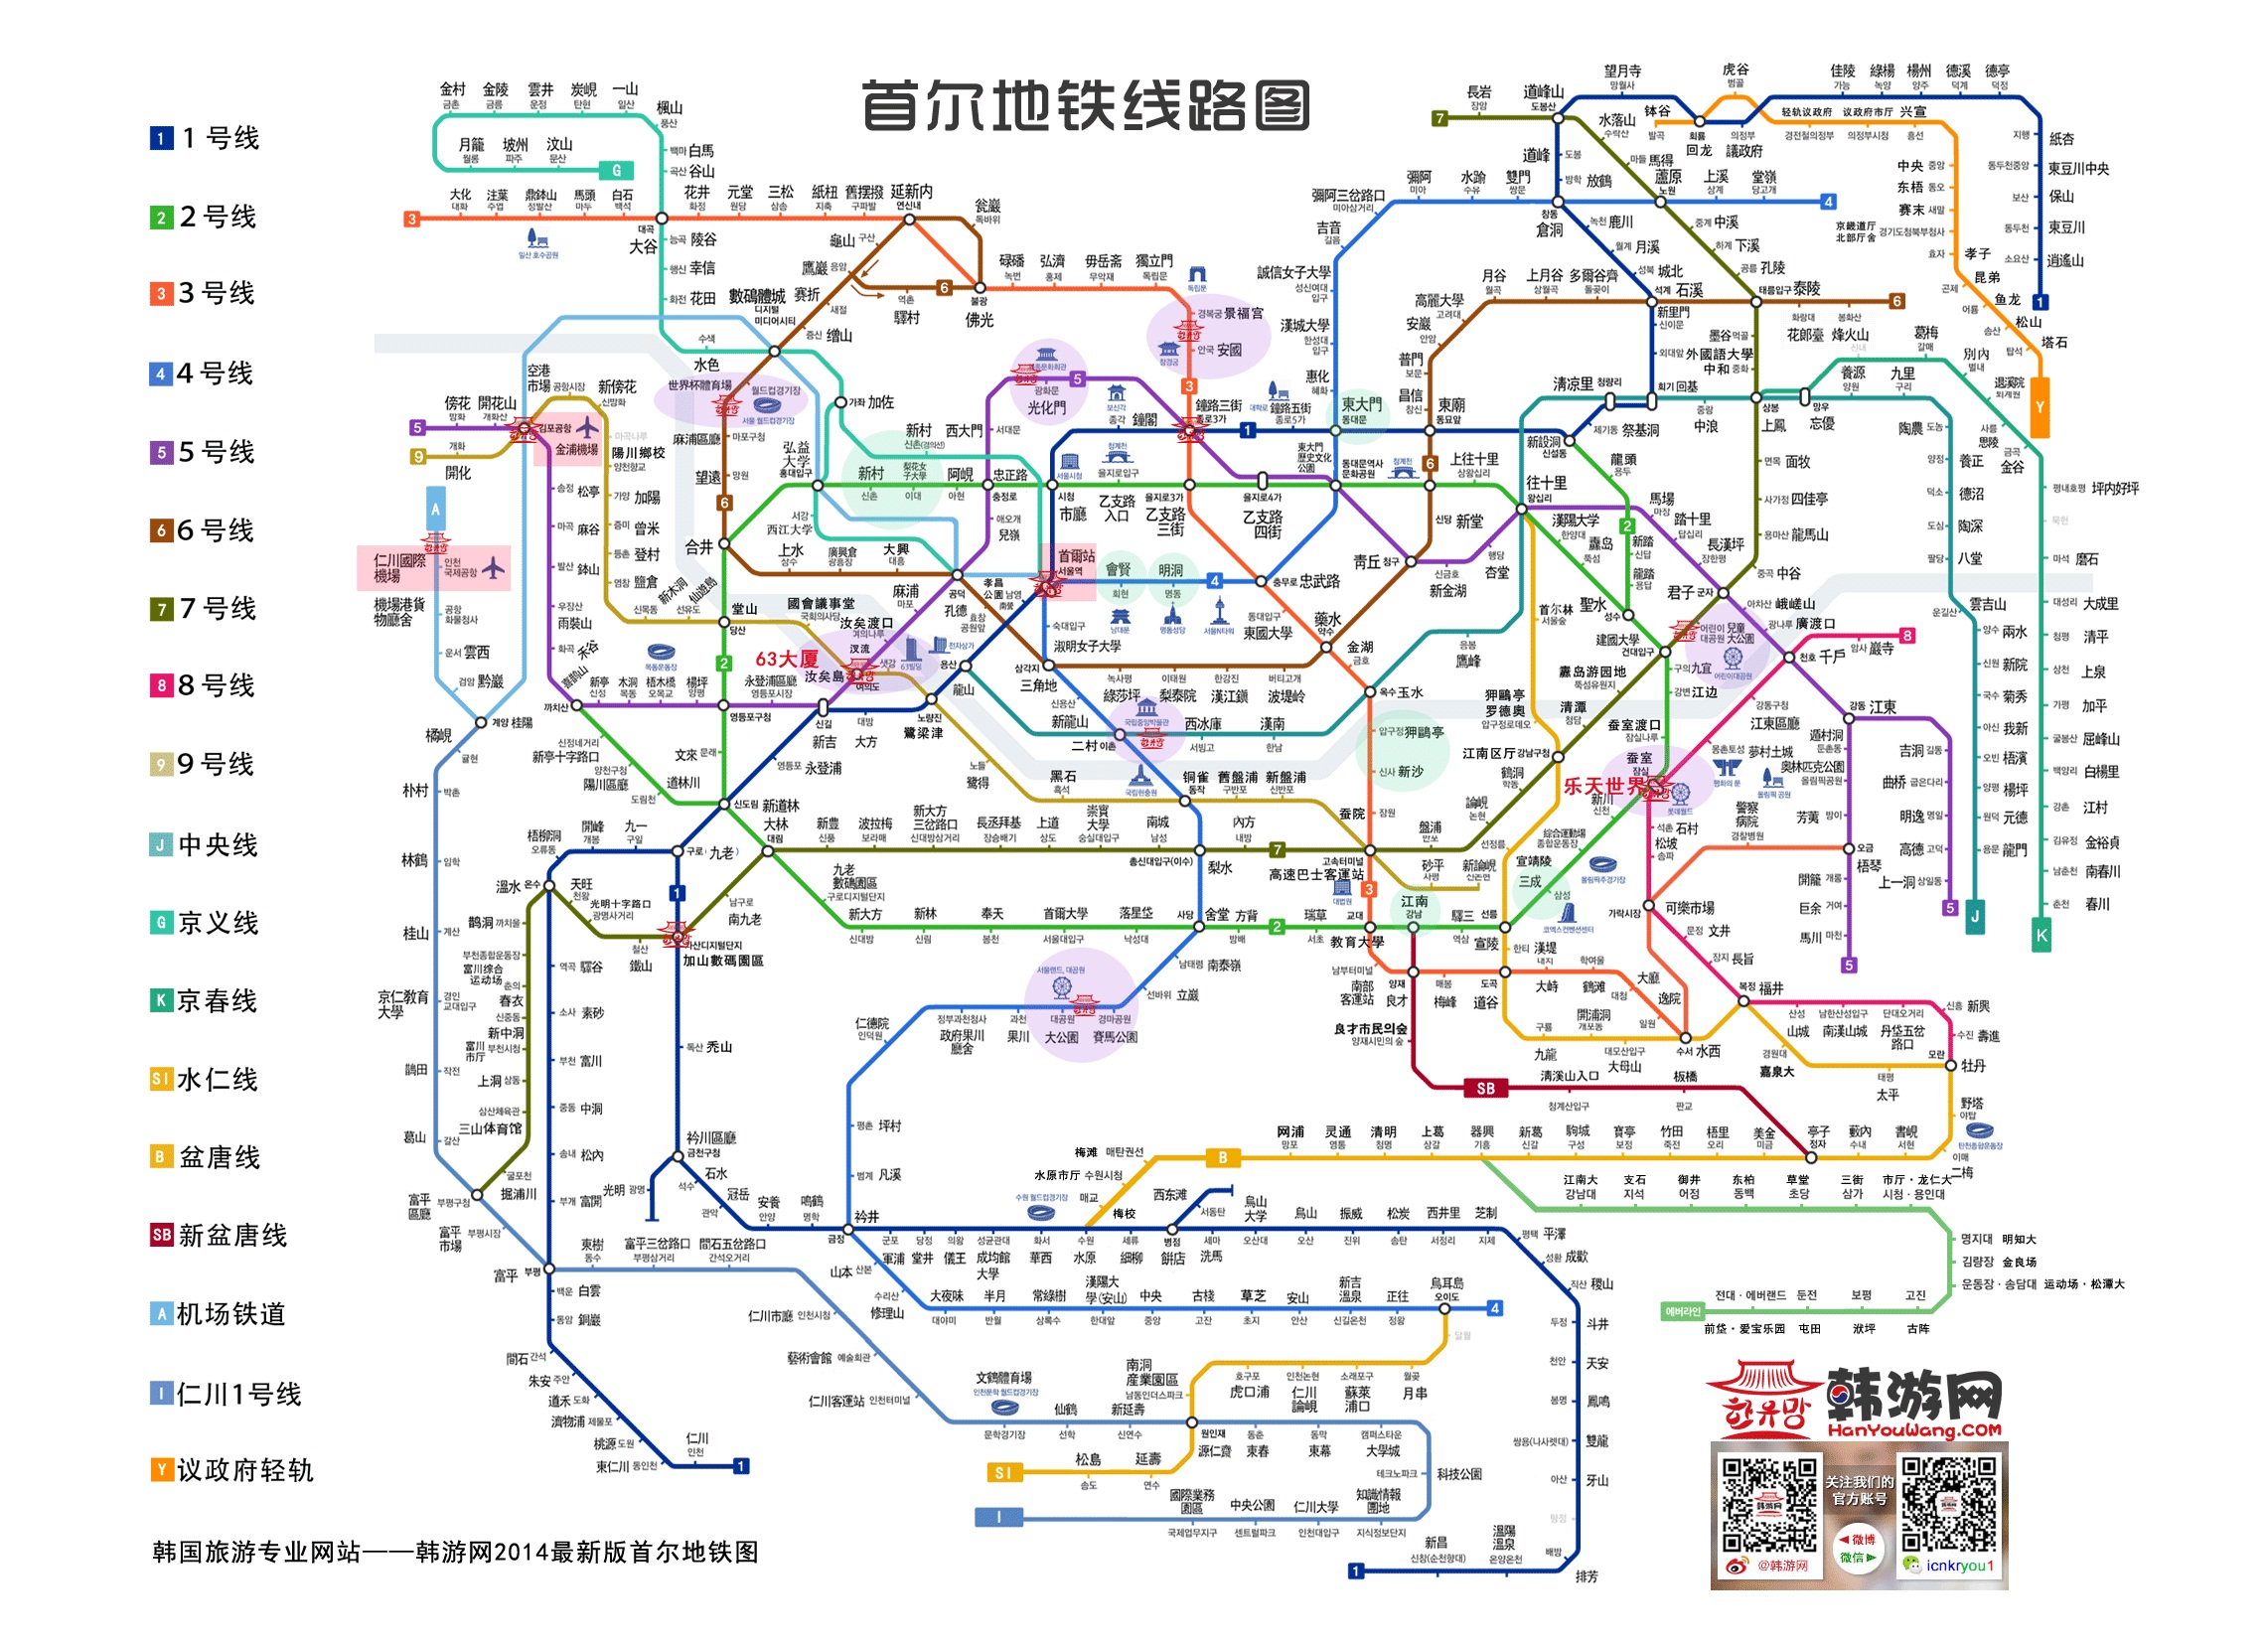 首尔怎麼坐地铁,求地铁路线图之类的